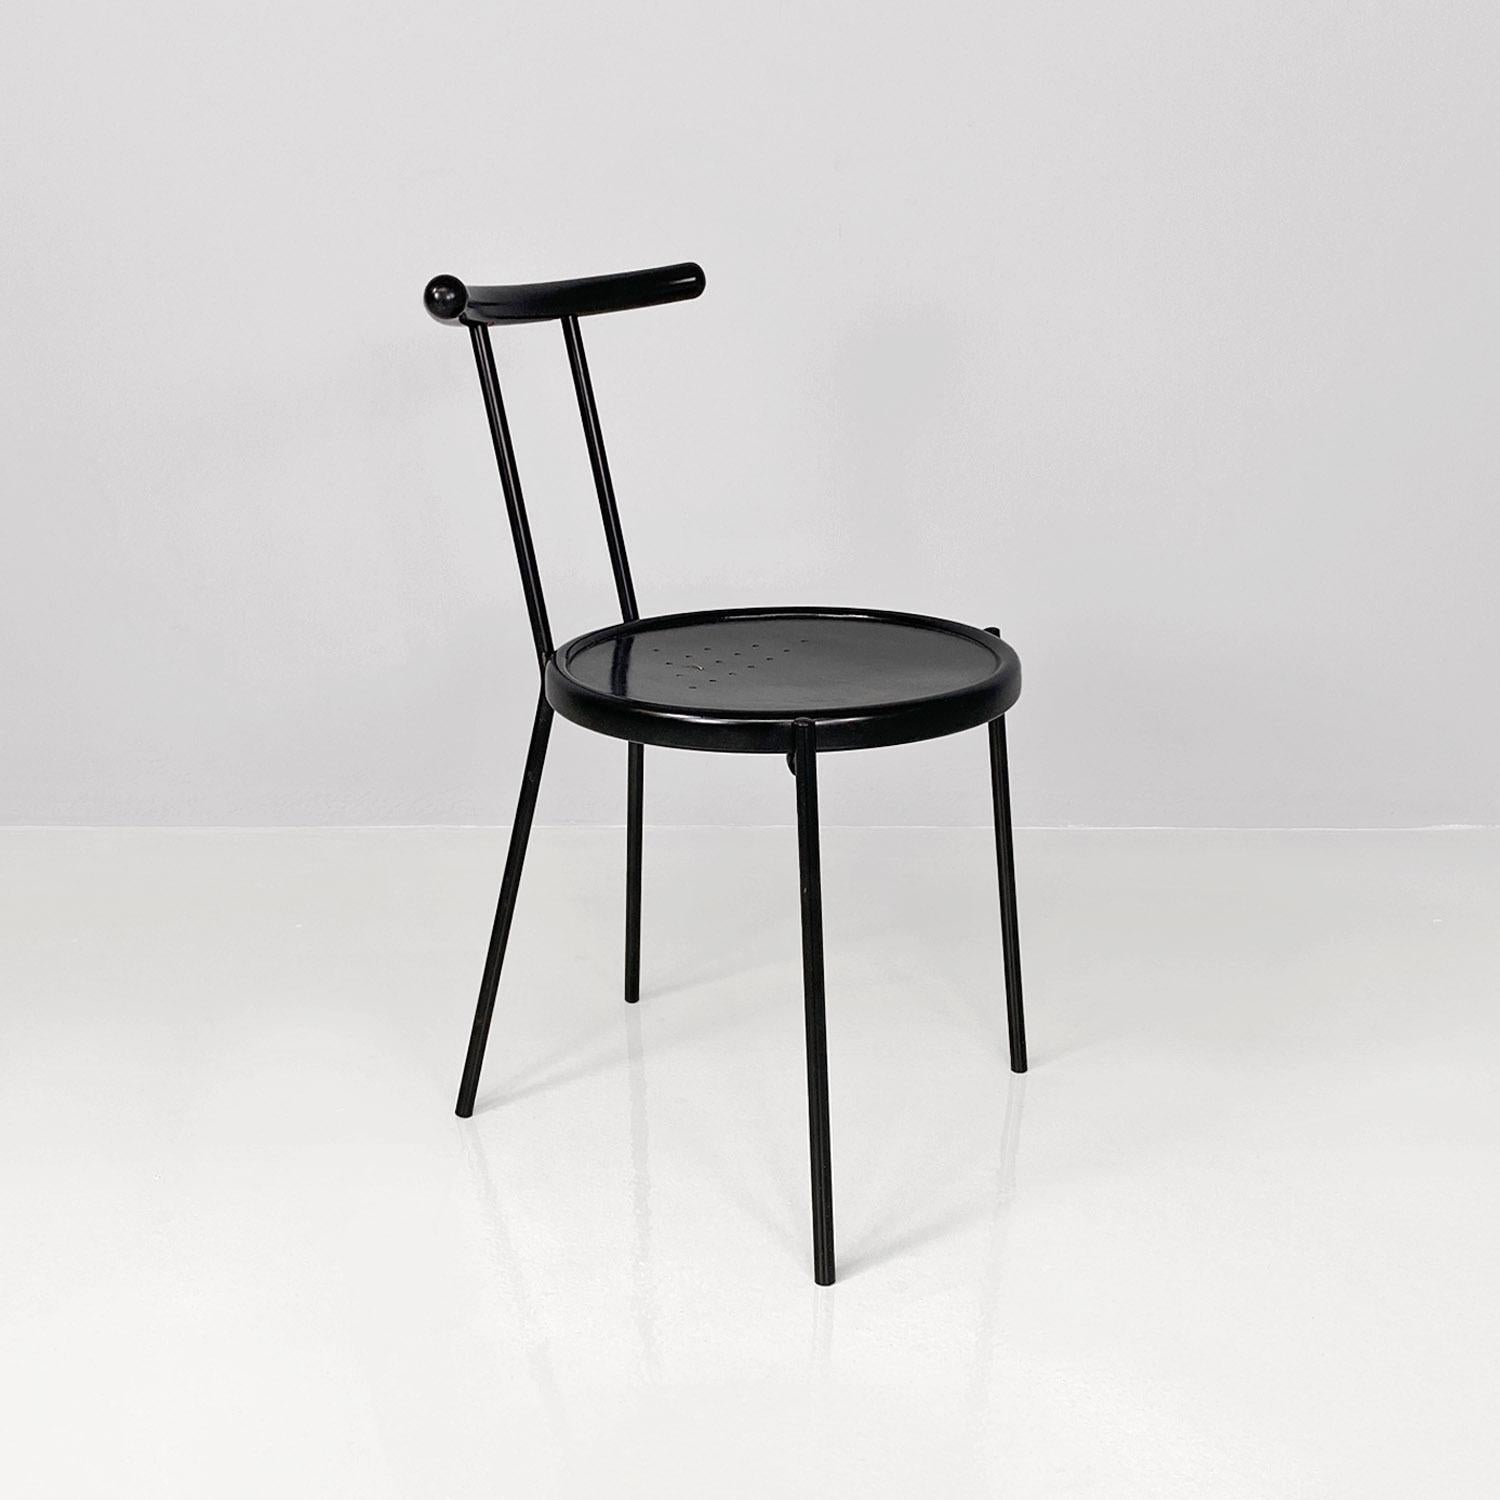 Italienischer moderner runder Stuhl aus schwarzem Holz und Metallstange, 1980er Jahre
Stuhl mit rundem, perforiertem Sitz aus schwarz lackiertem Holz. Gebogene Rückenlehne aus schwarz lackiertem Holz. Die Struktur und die Beine sind aus schwarz